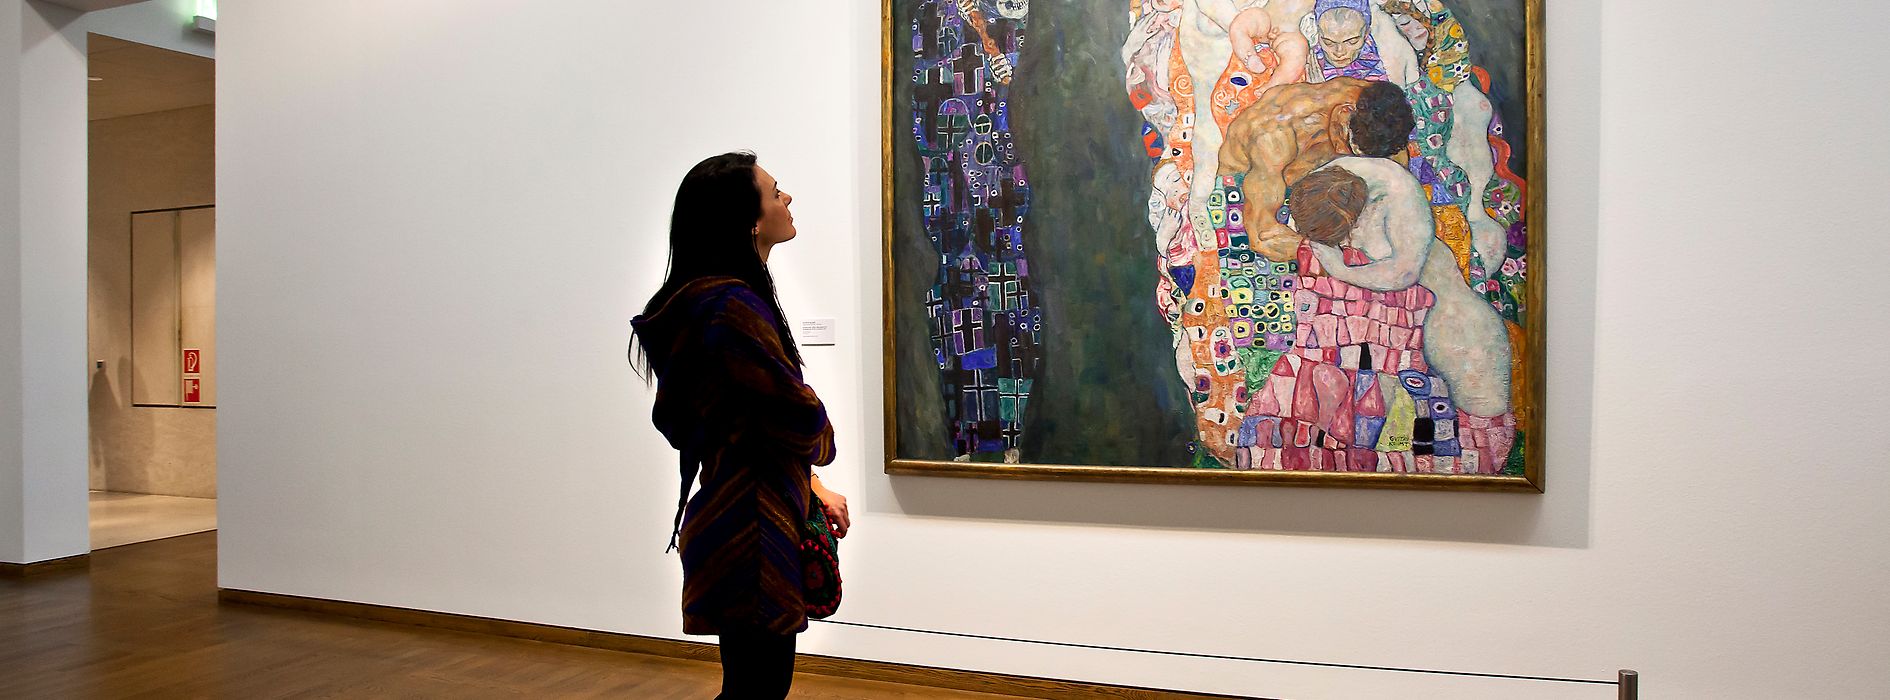 Cuadro «Muerte y vida» de Gustav Klimt del Museo Leopold